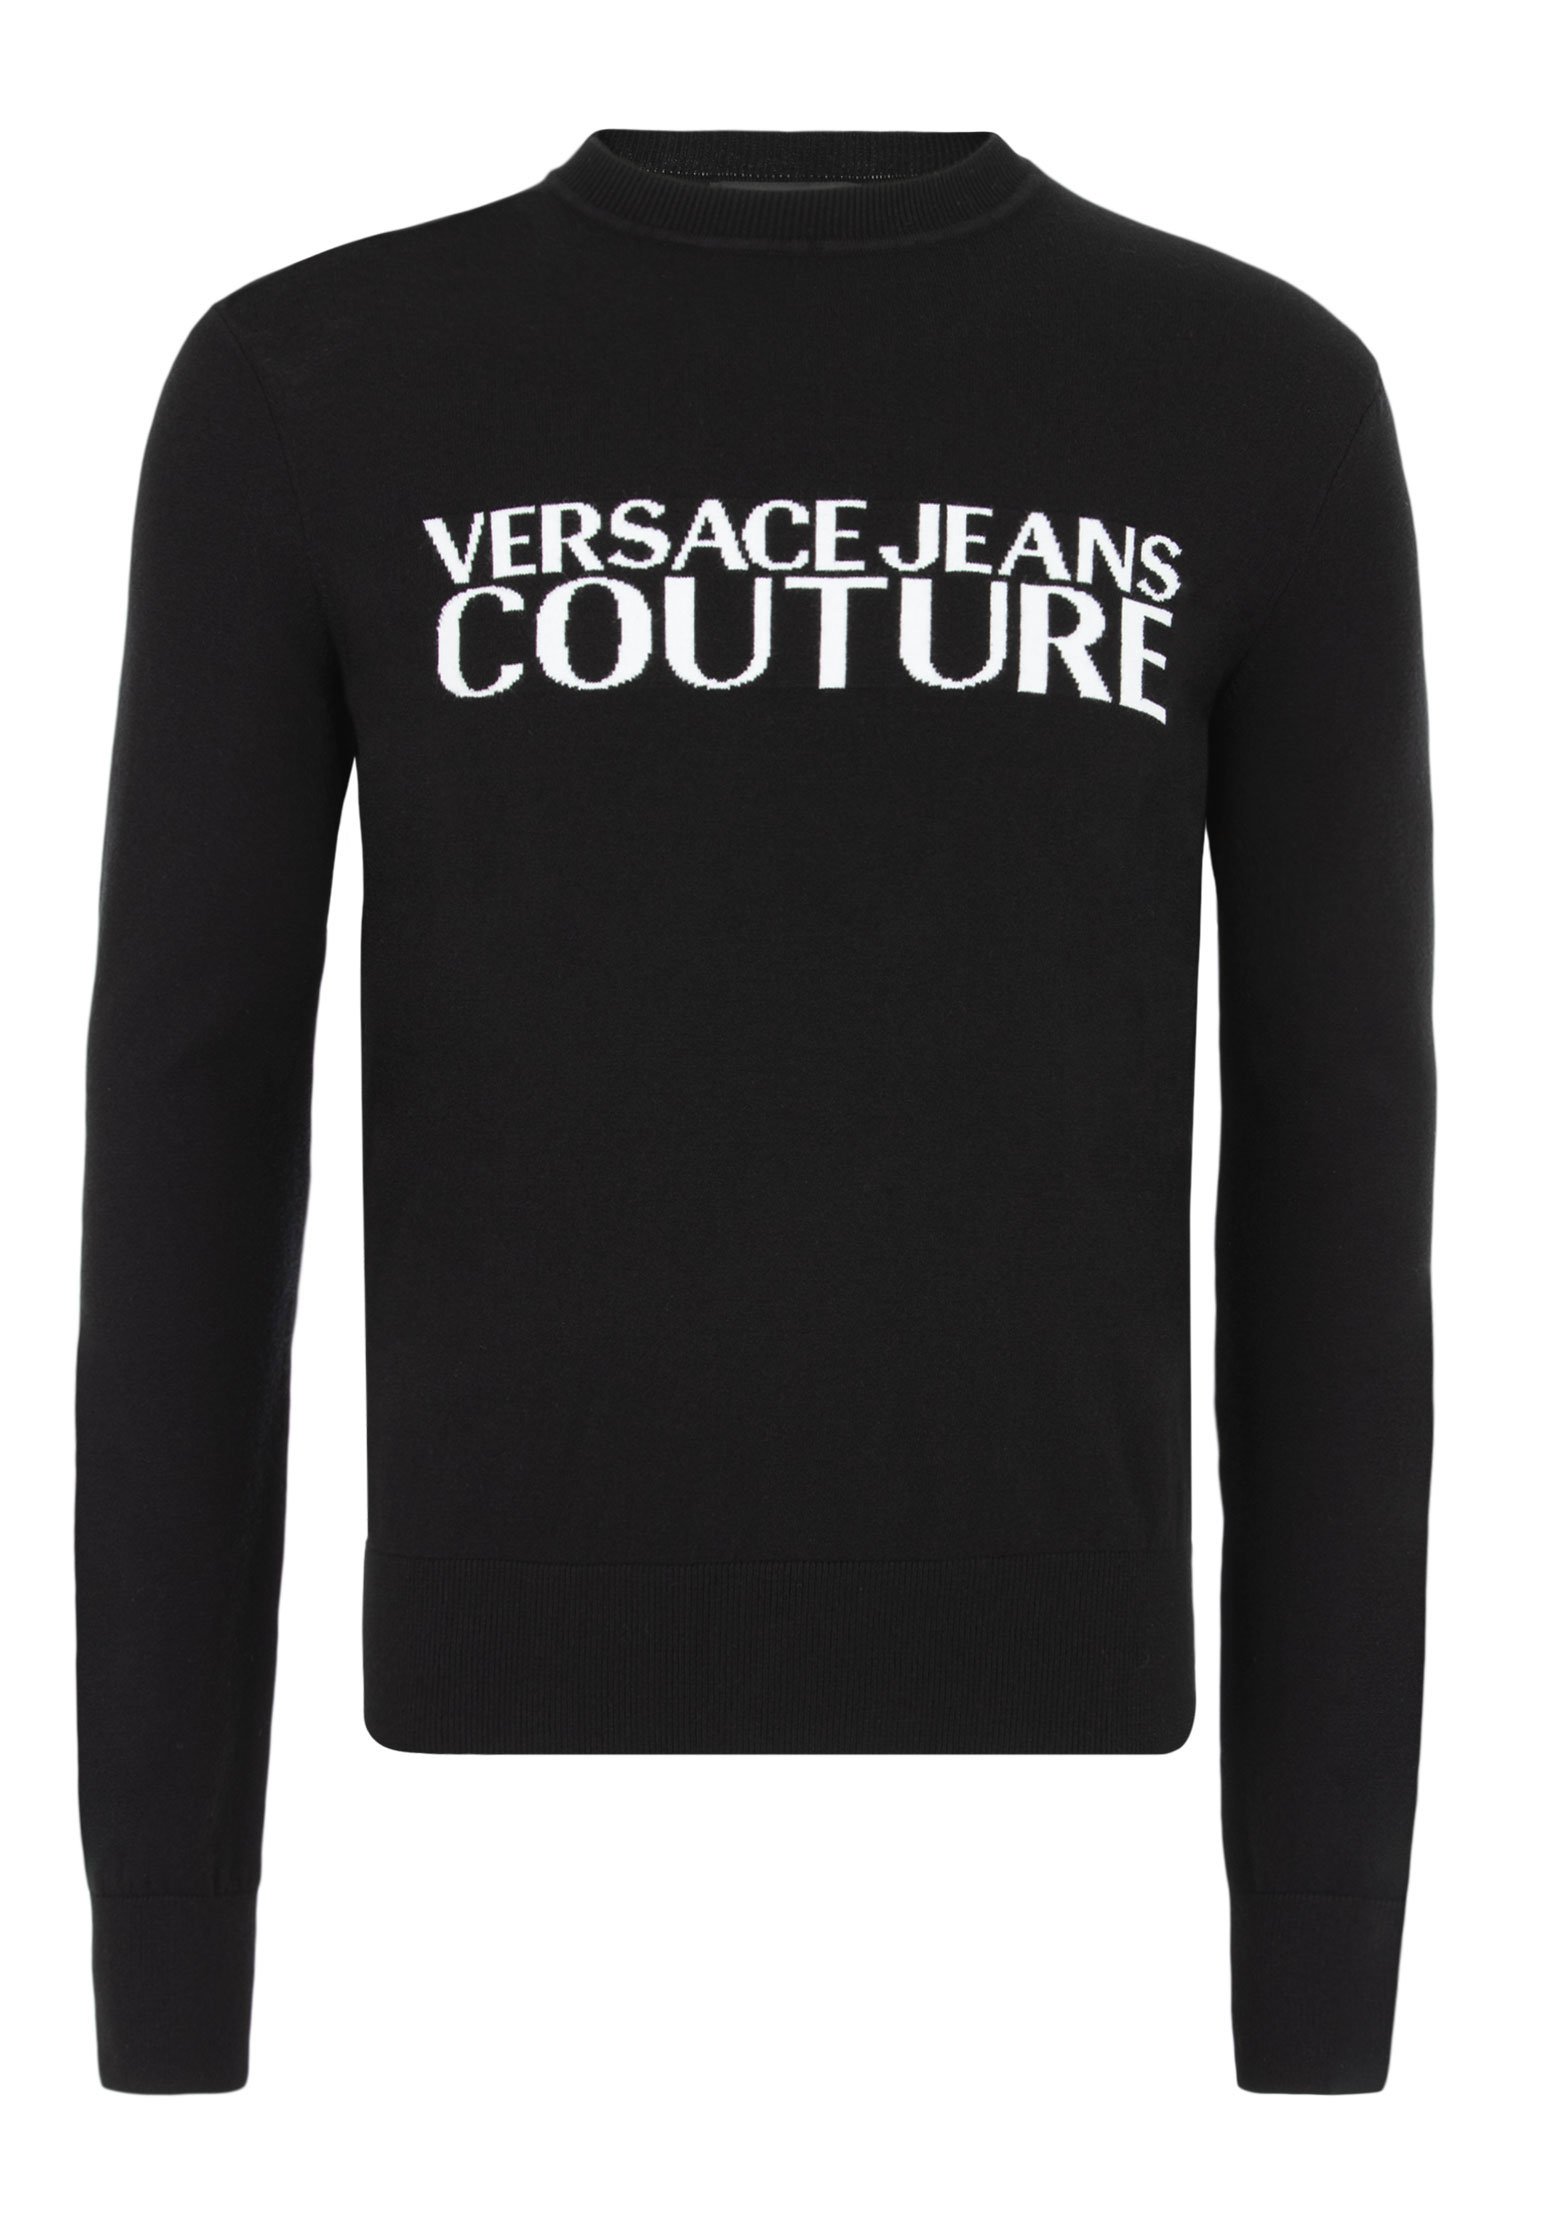 Джемпер мужской Versace Jeans Couture 123544 черный S